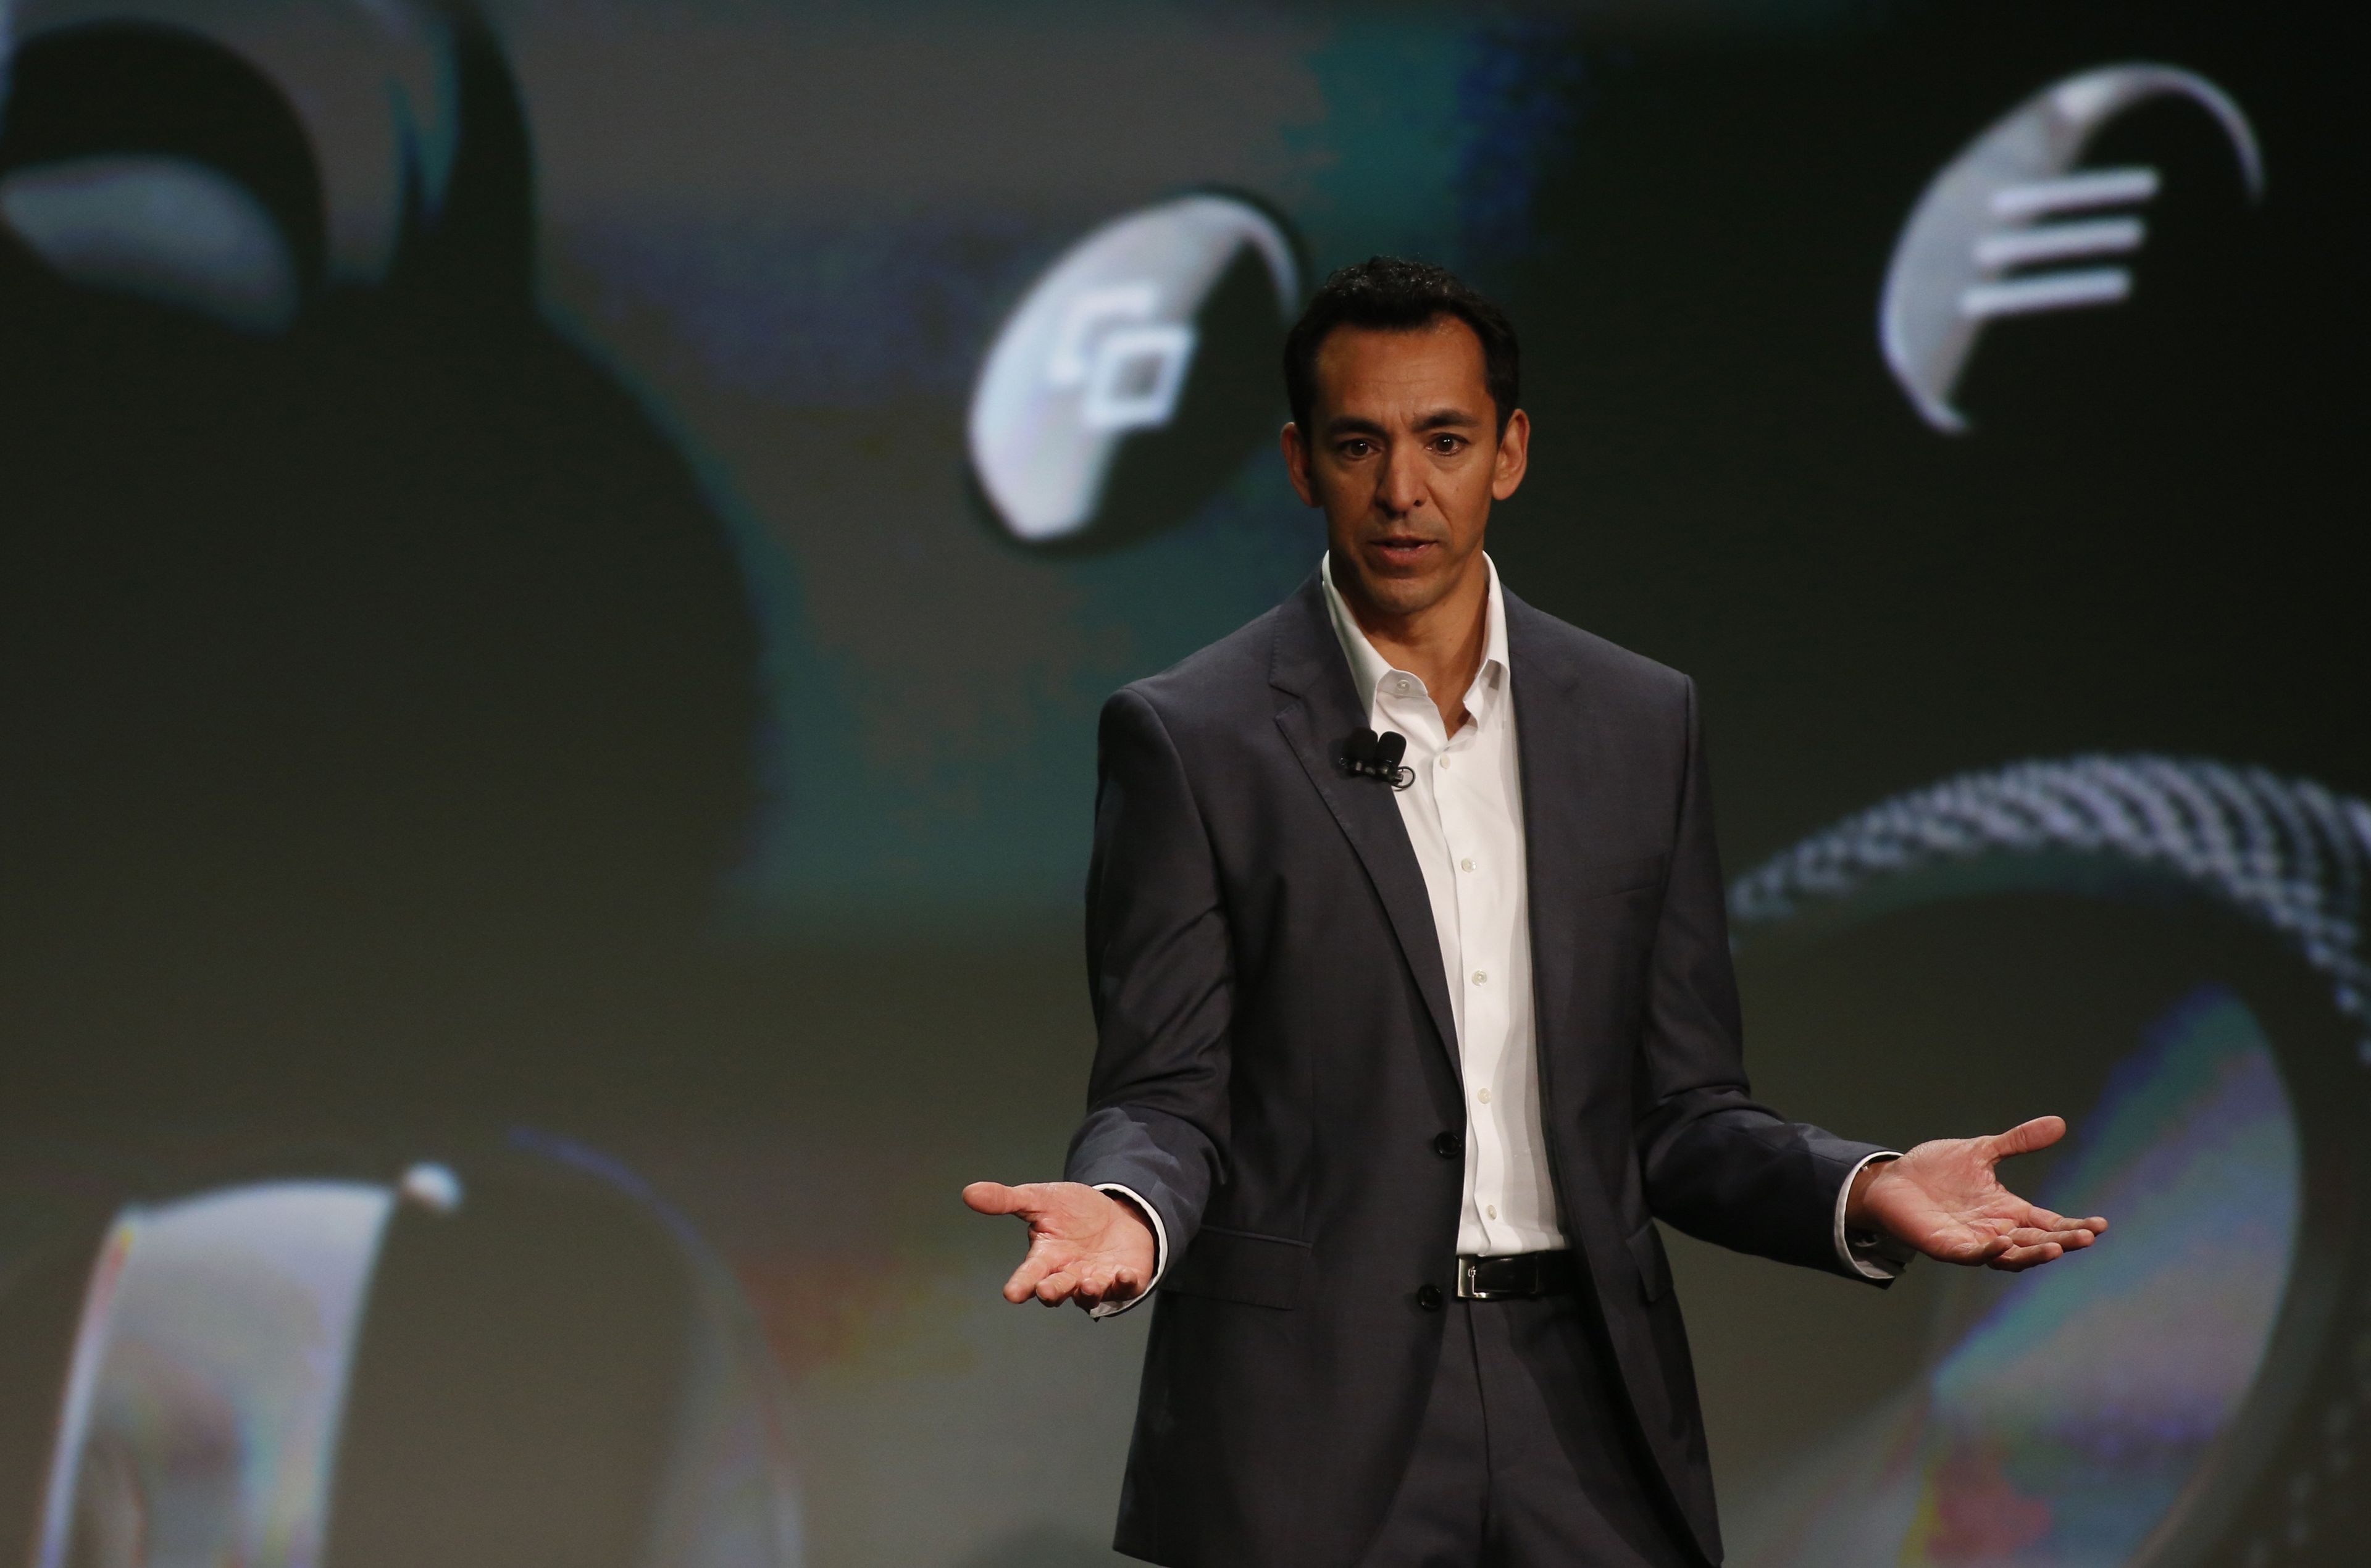 Yusuf Mehdi, vicepresidente corporativo de Microsoft de Vida moderna, Búsqueda y Dispositivos, en un evento de Xbox en 2013.